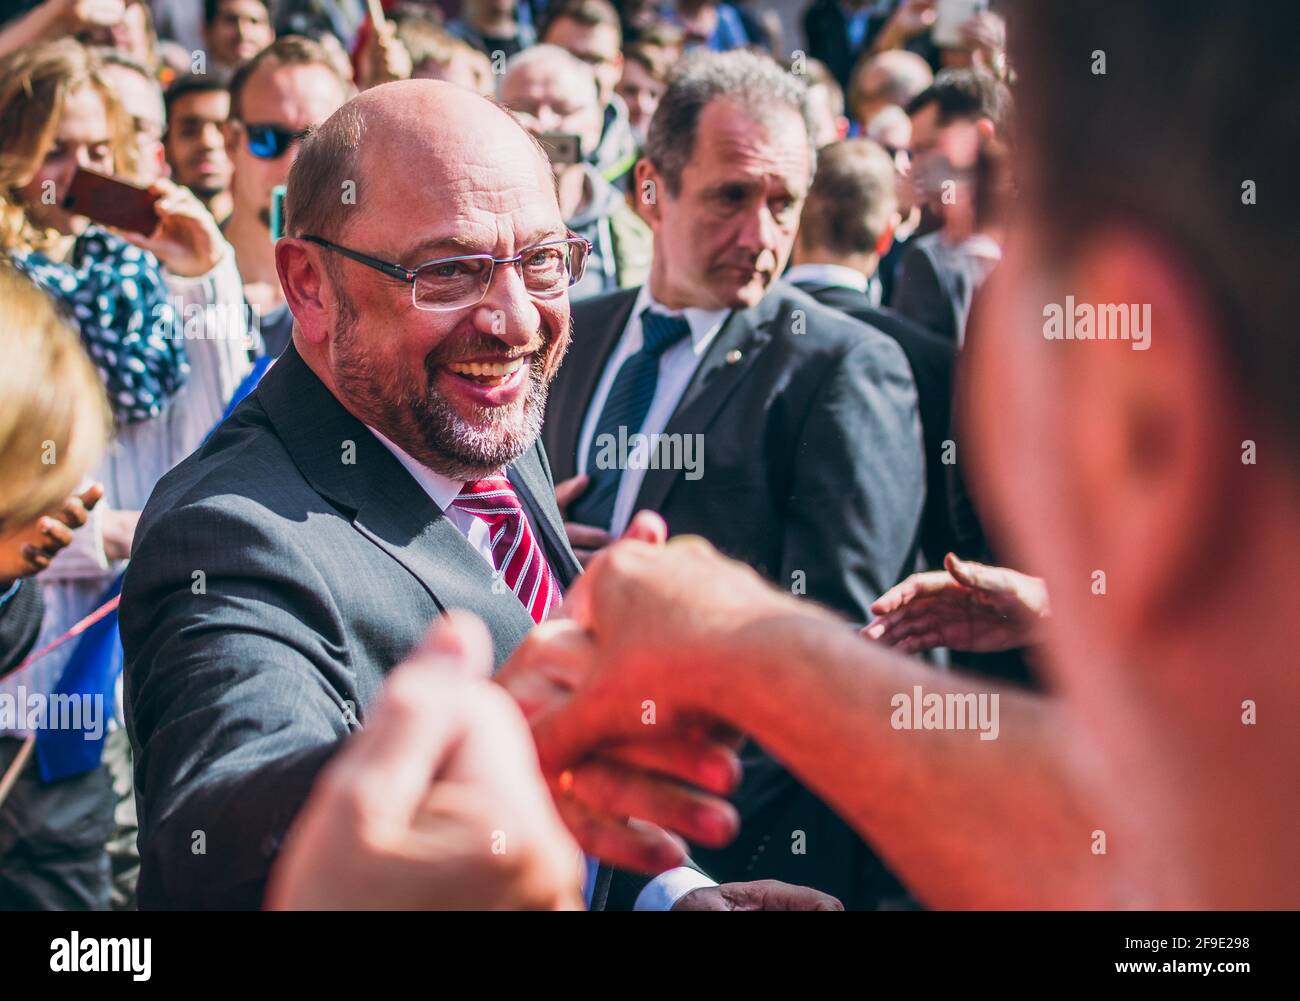 Aquisgrán, Alemania - 23 de septiembre de 2017: Martin Schulz, candidato político y socialdemócrata alemán para la cancillería, se reúne con ciudadanos durante la celebración del programa elec Foto de stock